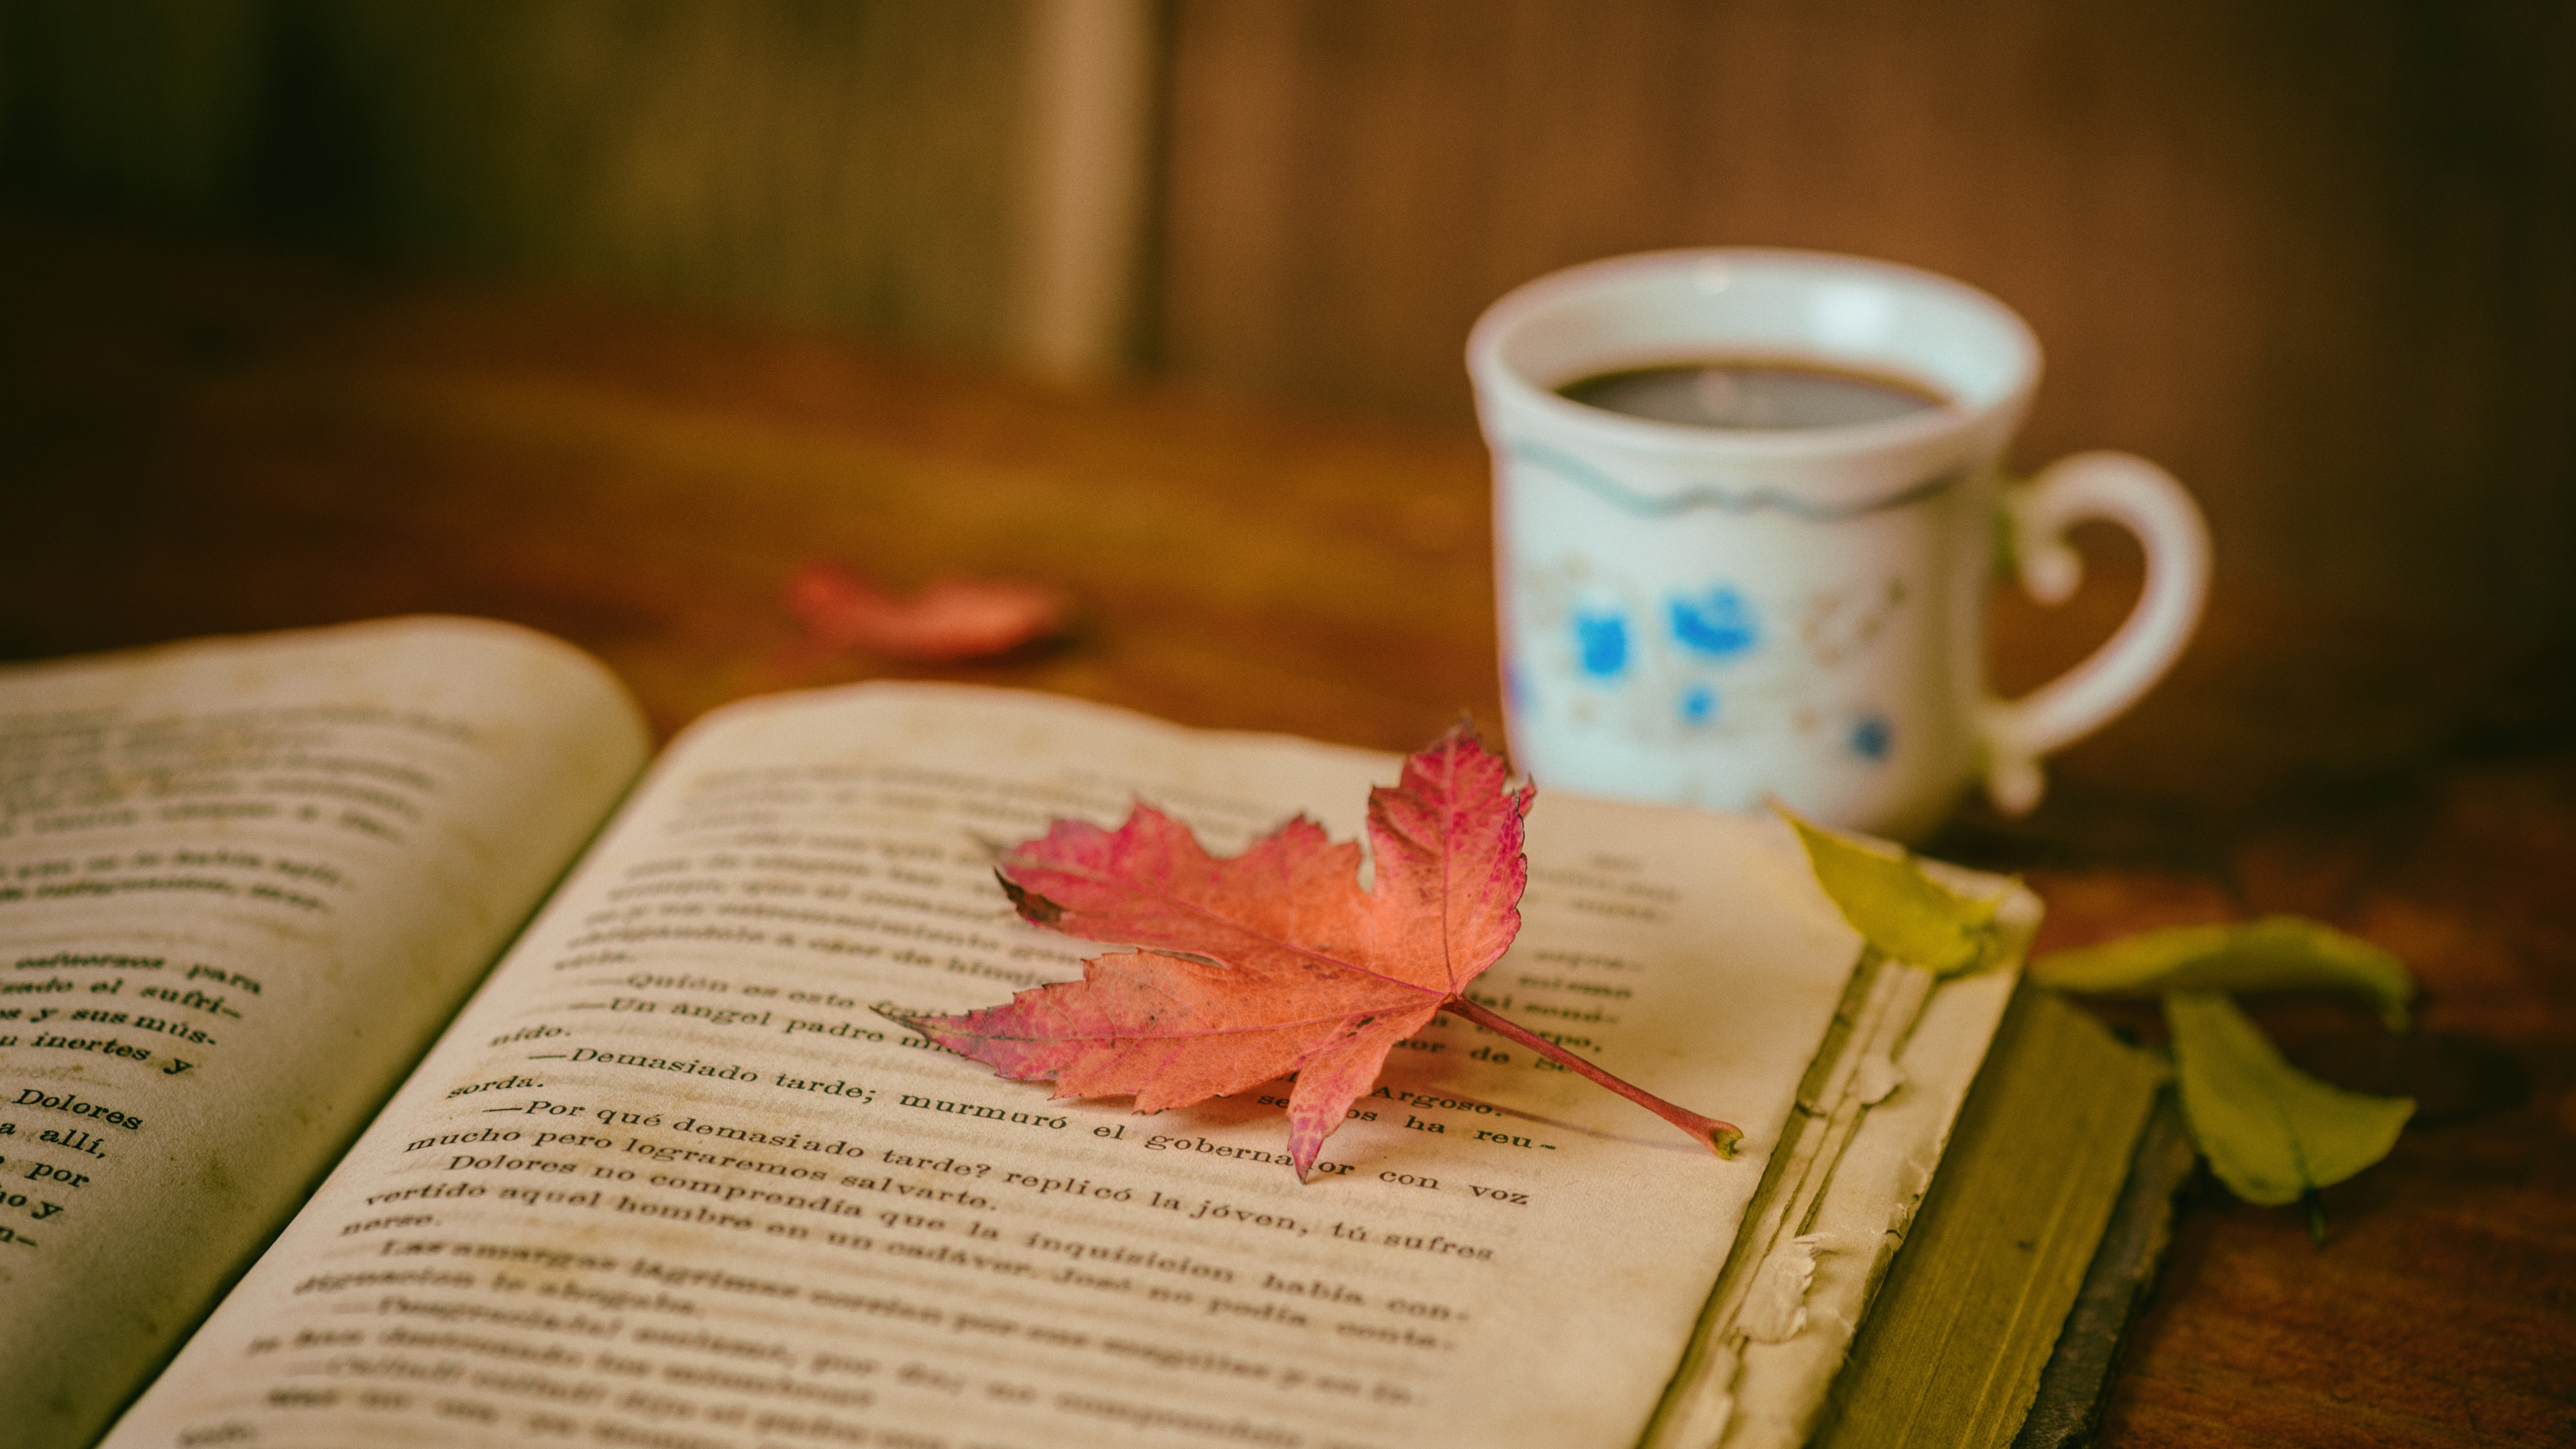 本书, 书评, 阅读, 咖啡杯, 粉红色 壁纸 3840x2160 允许